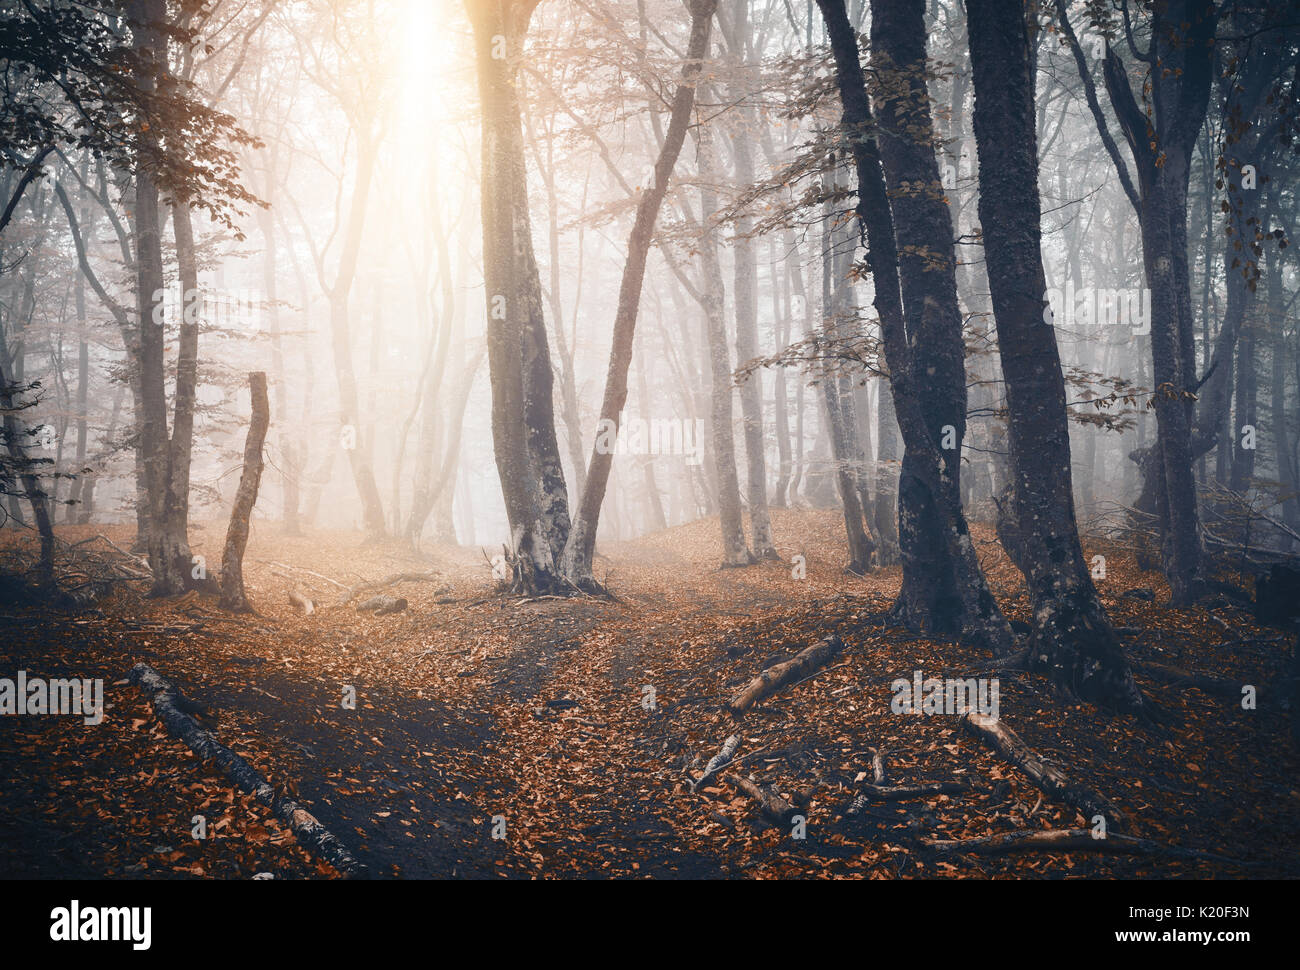 Dunkle Herbst Wald mit Trail im Nebel. Herbst Wald. Die verzauberte Herbst Wald im Nebel am Abend. Alter Baum. Landschaft mit Bäumen, bunte orange Folia Stockfoto